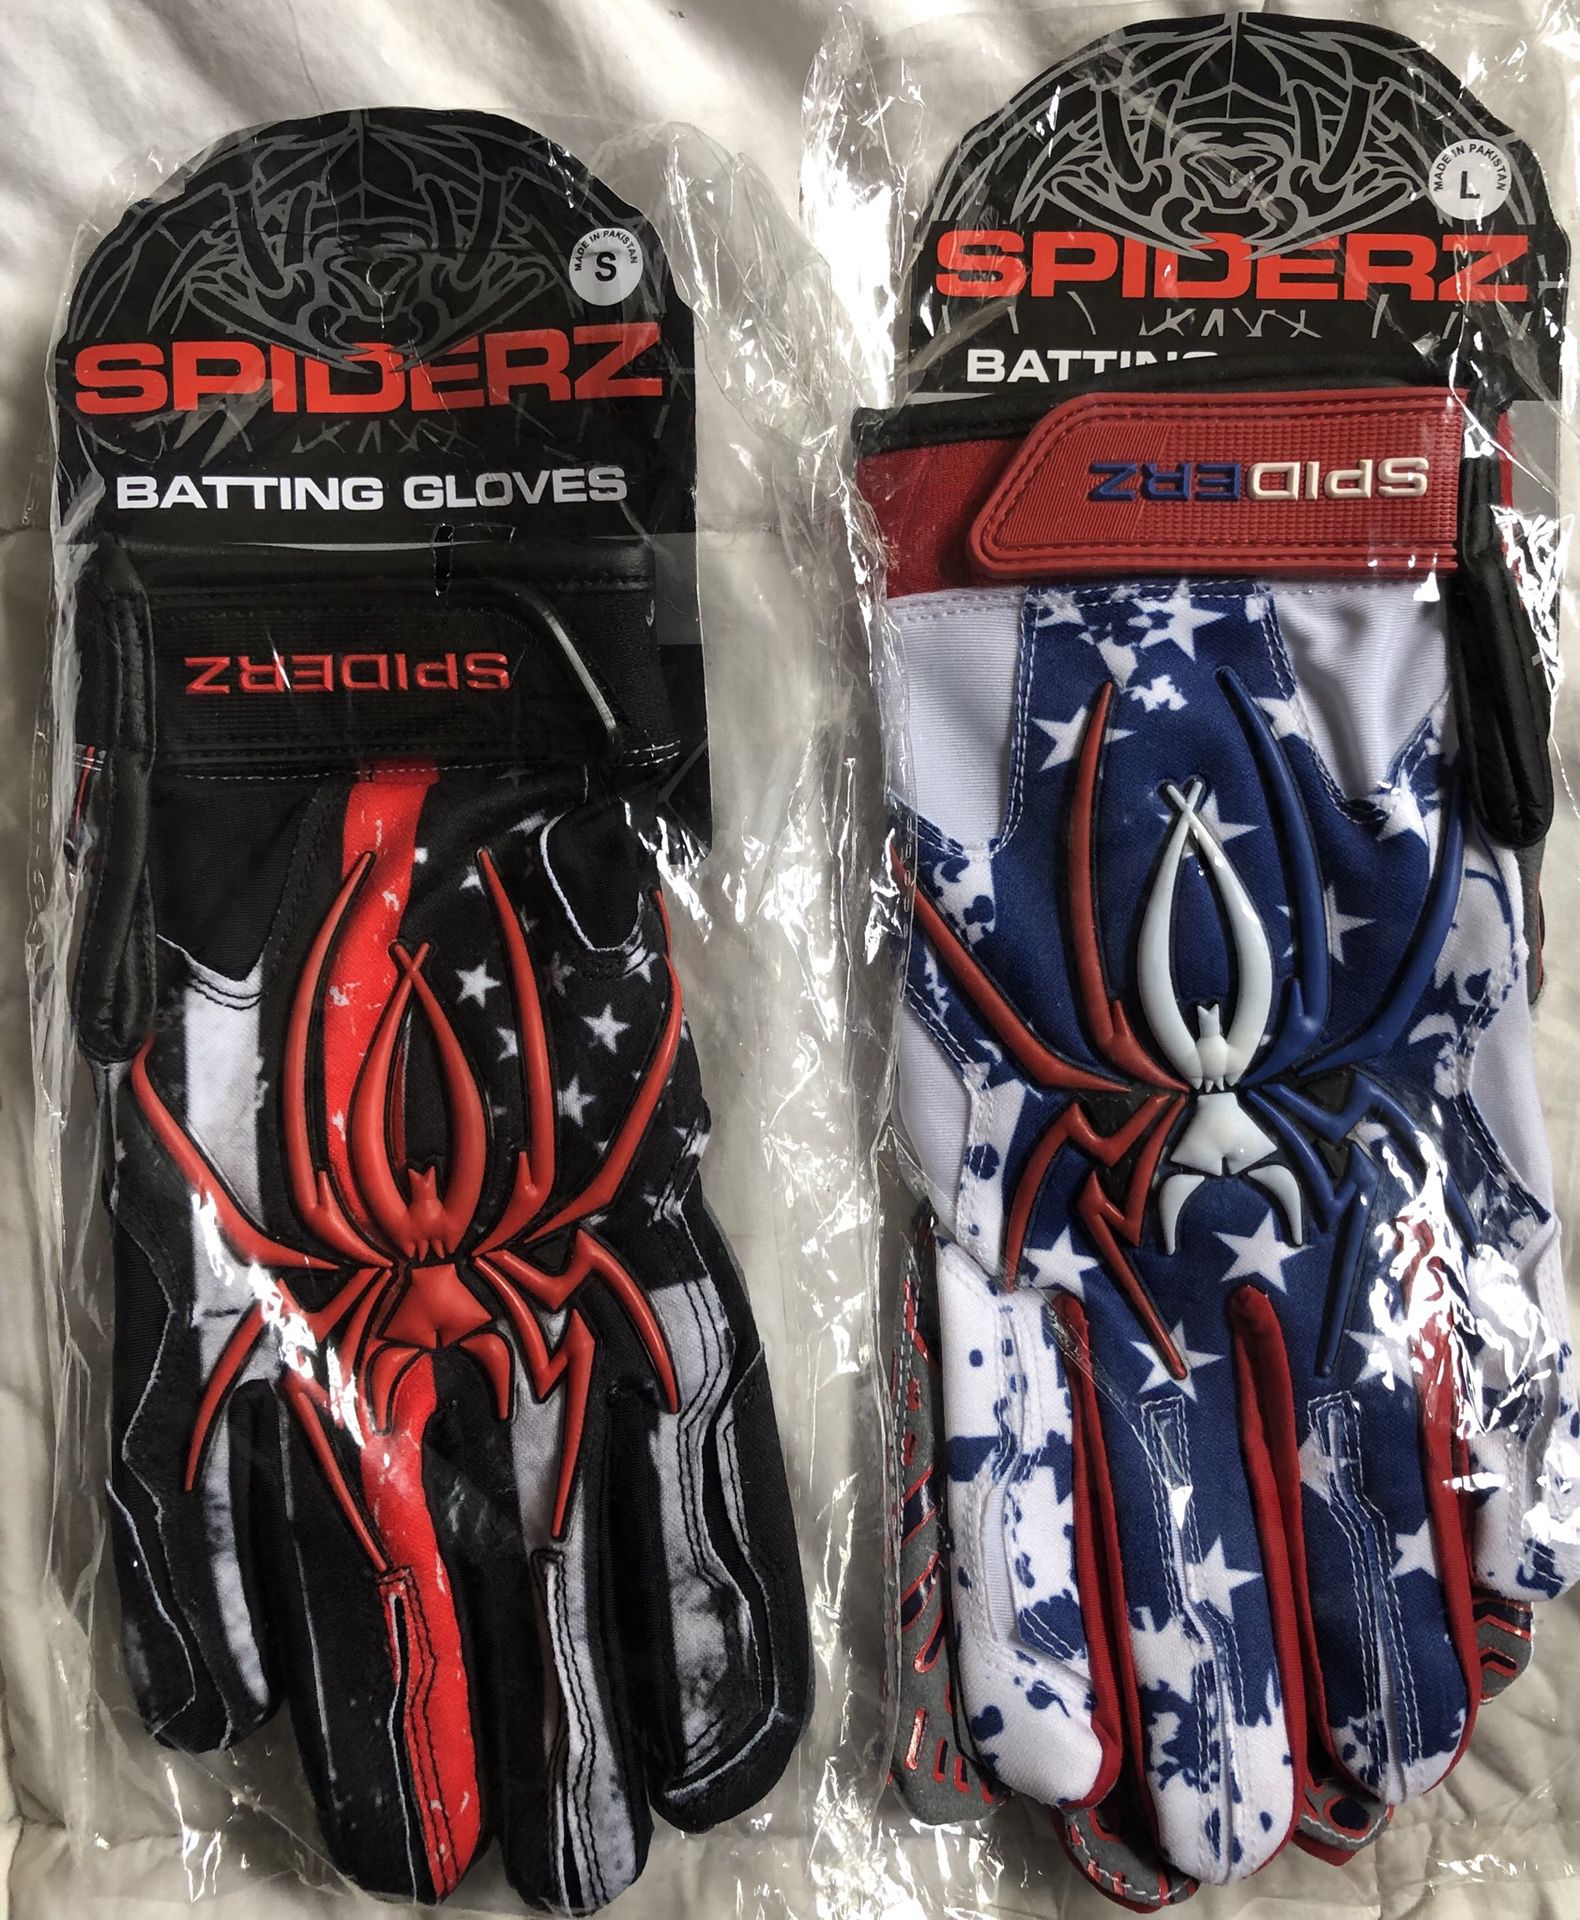 Spiderz Batting Gloves